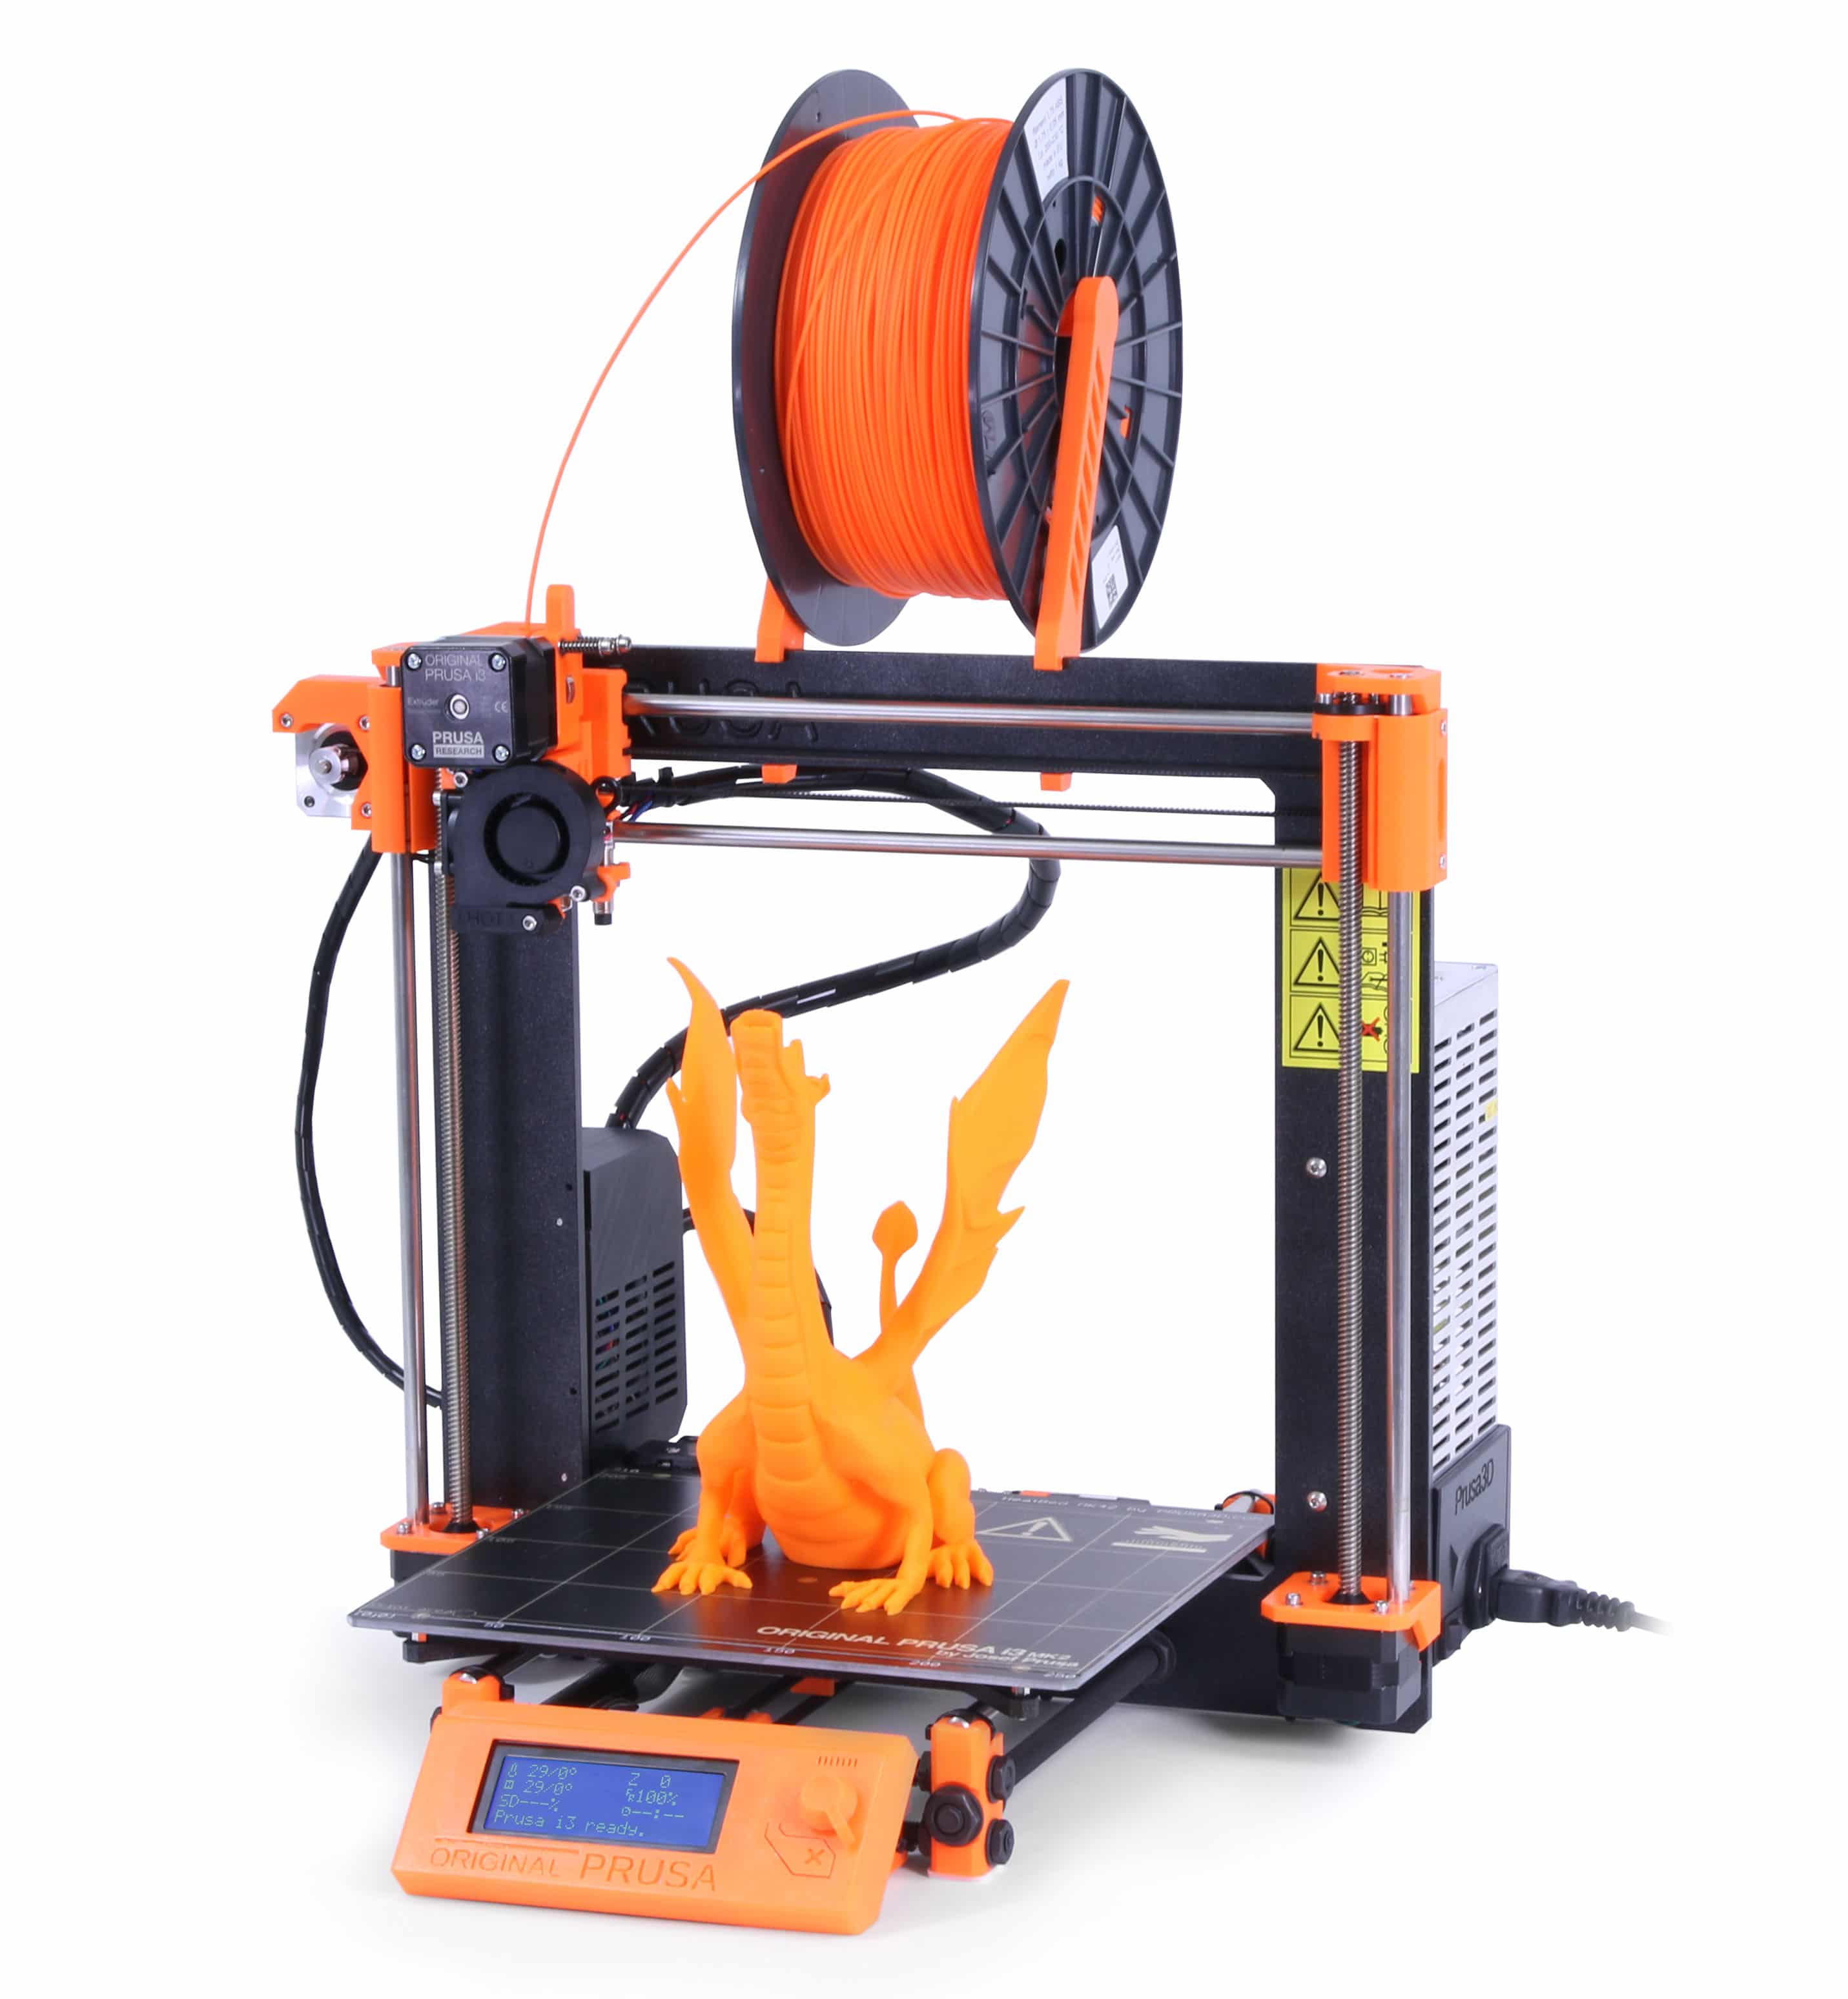 Kit imprimante 3d Prusa I3 MK2 Kits imprimantes 3D